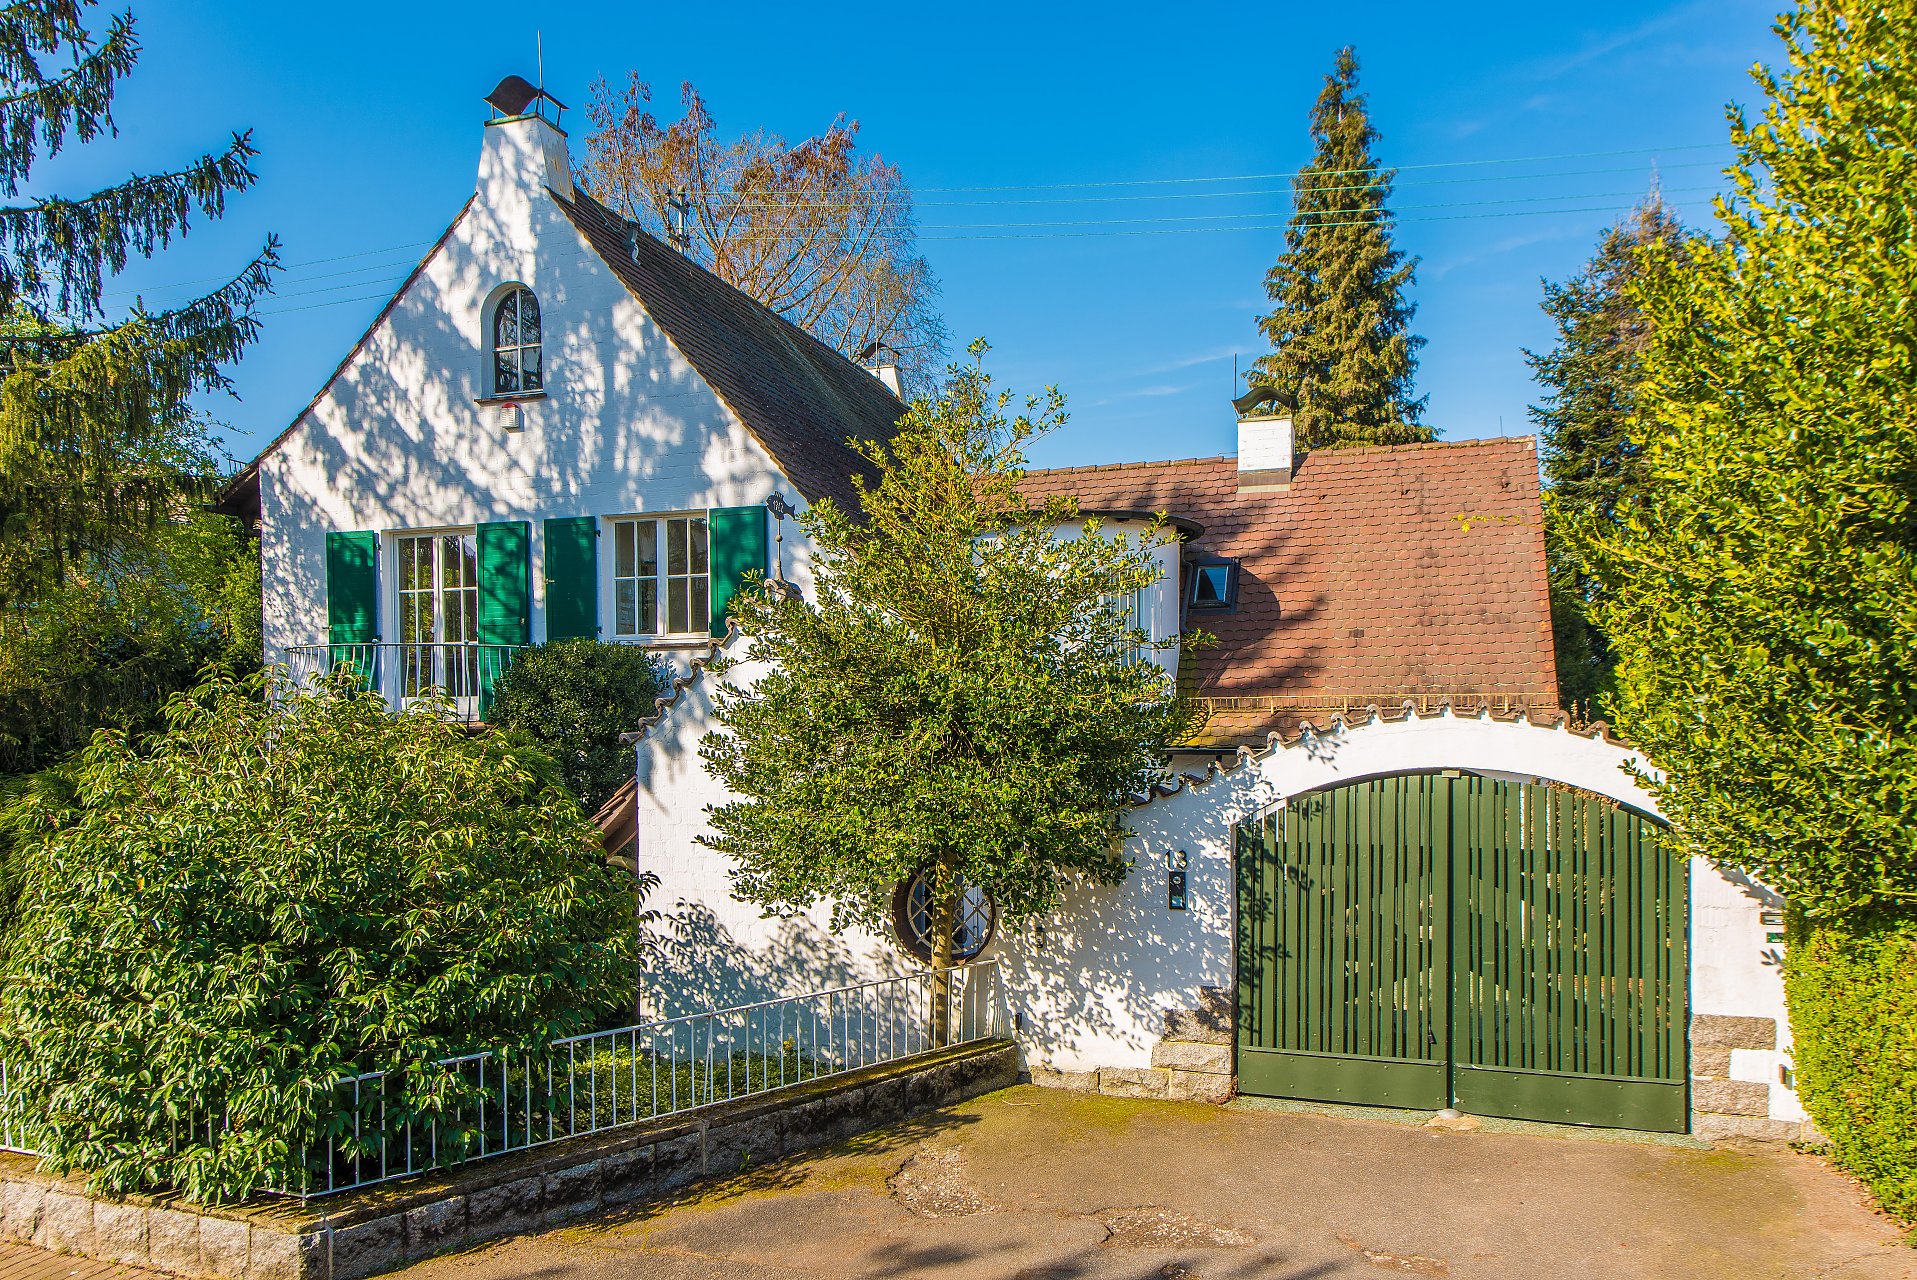 Hirschberg Schnuckeliges Villa chen in sehr guter Hanglage, umfangreich Saniert - Oliver Reifferscheid - Immobilienmakler Darmstadt